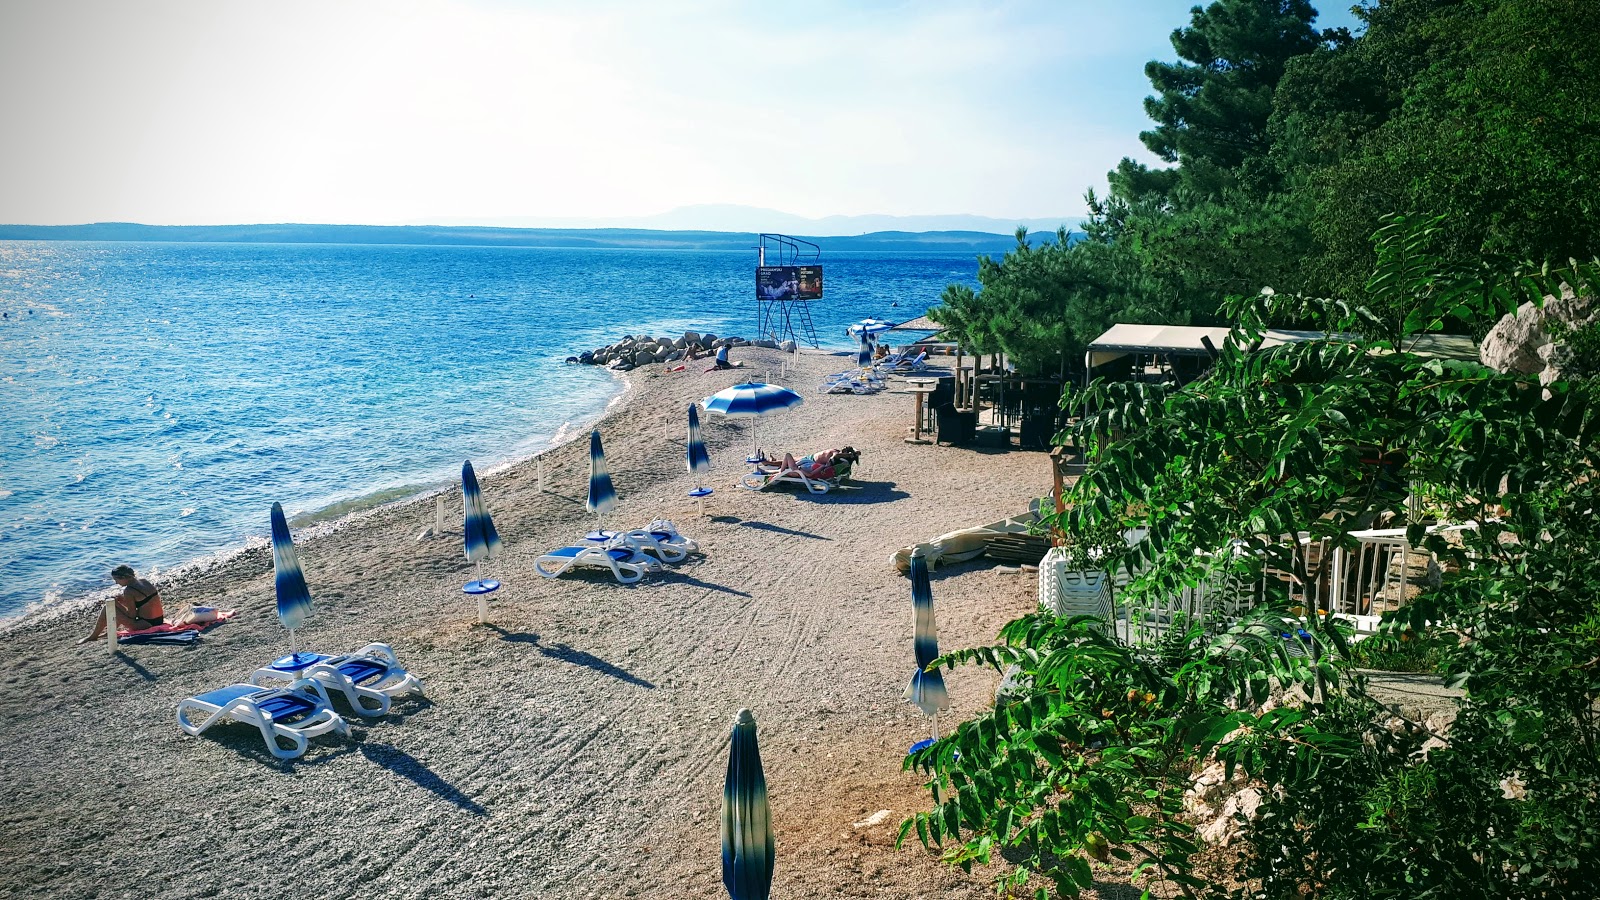 Photo of Capriccio beach with small multi bays